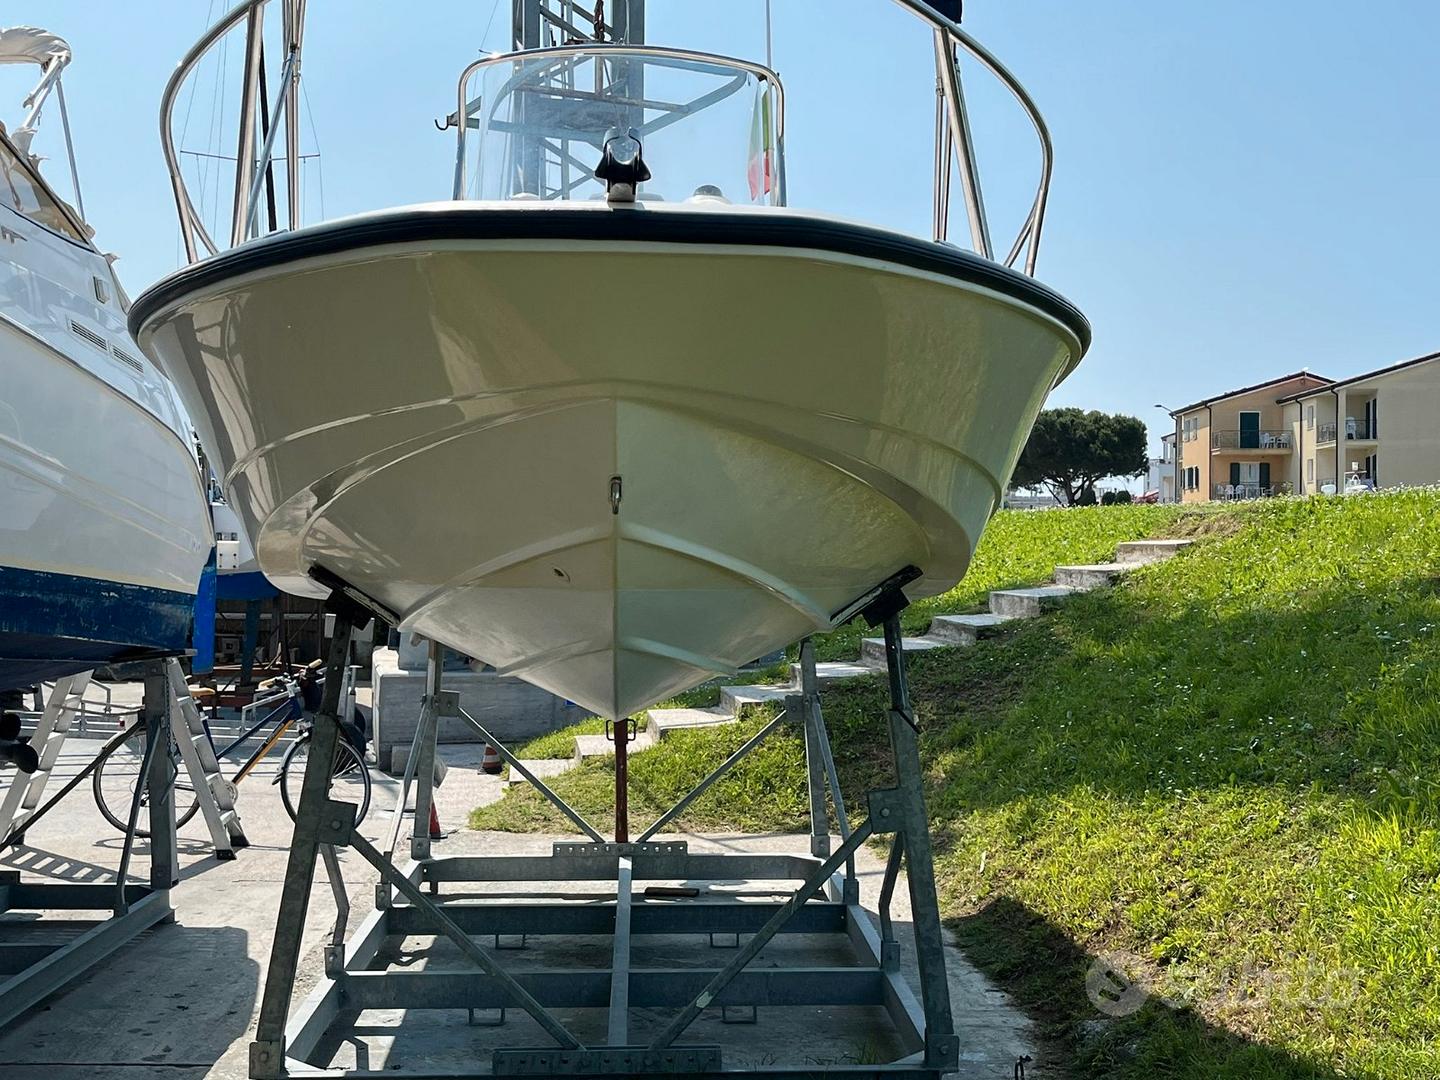 Subito - Campello Marine by Nuova Autoricambi - Boston whaler 200 dauntless+mercury  150 - Nautica In vendita a Venezia